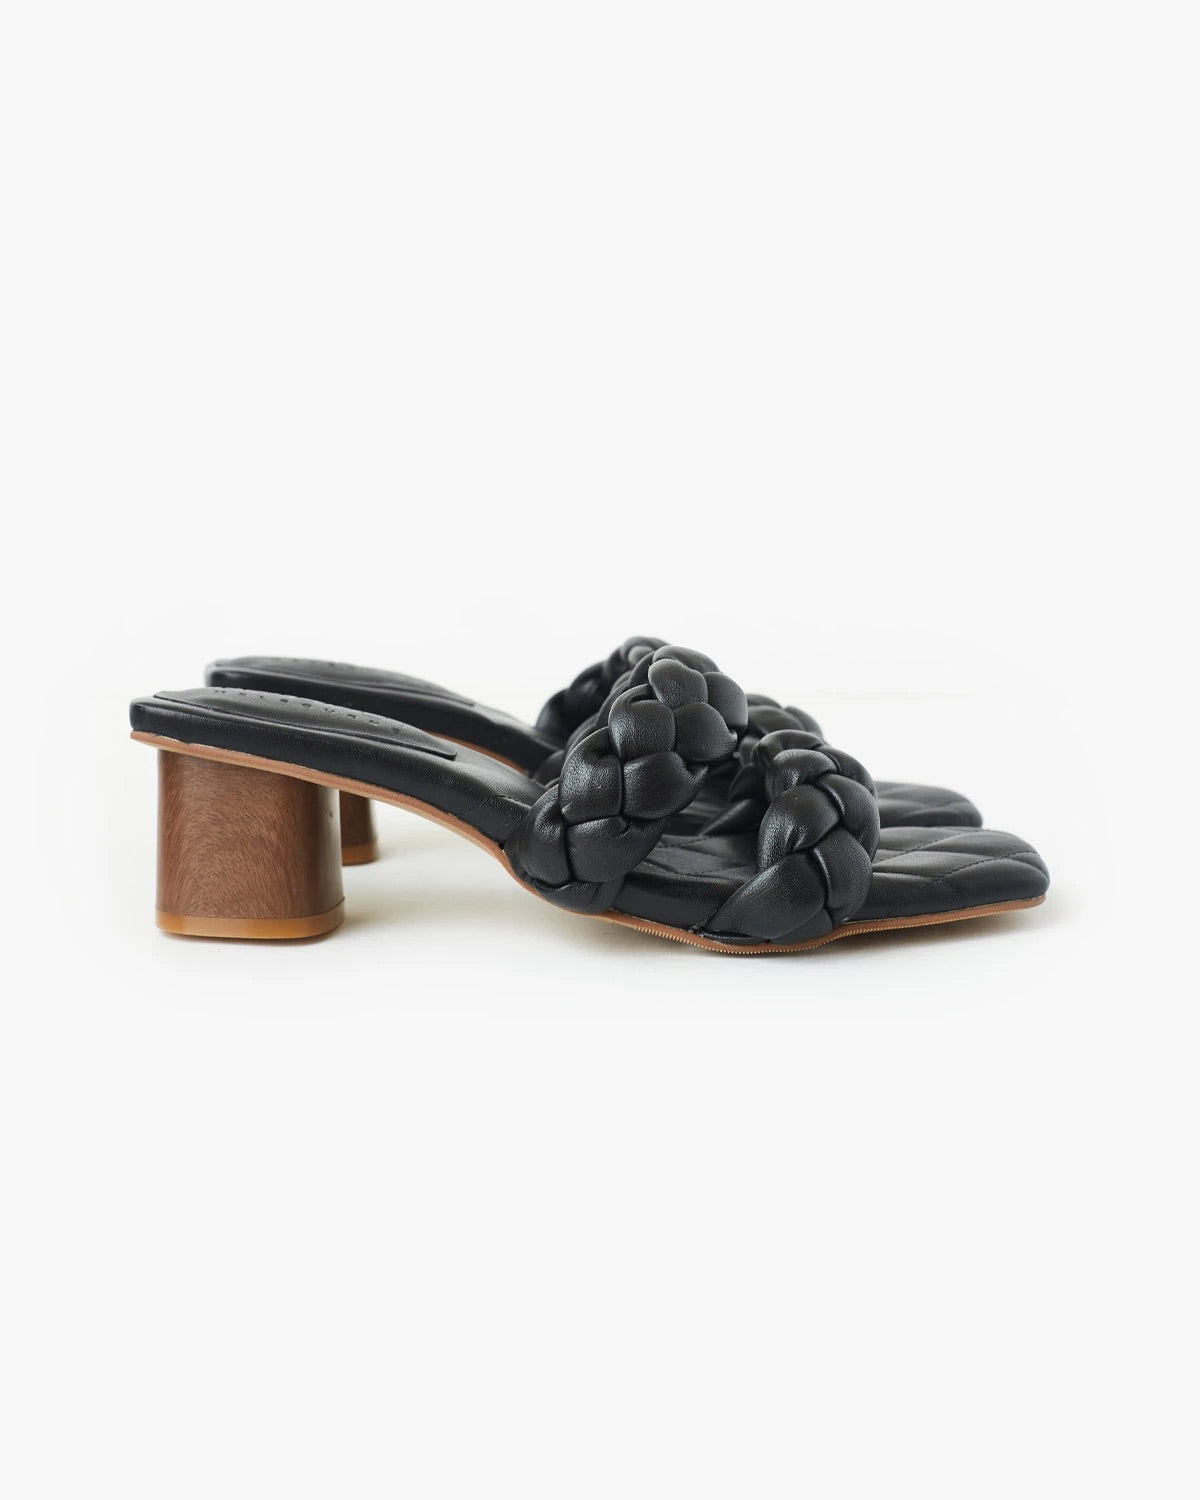 Walnut - Illy Leather heel - Black